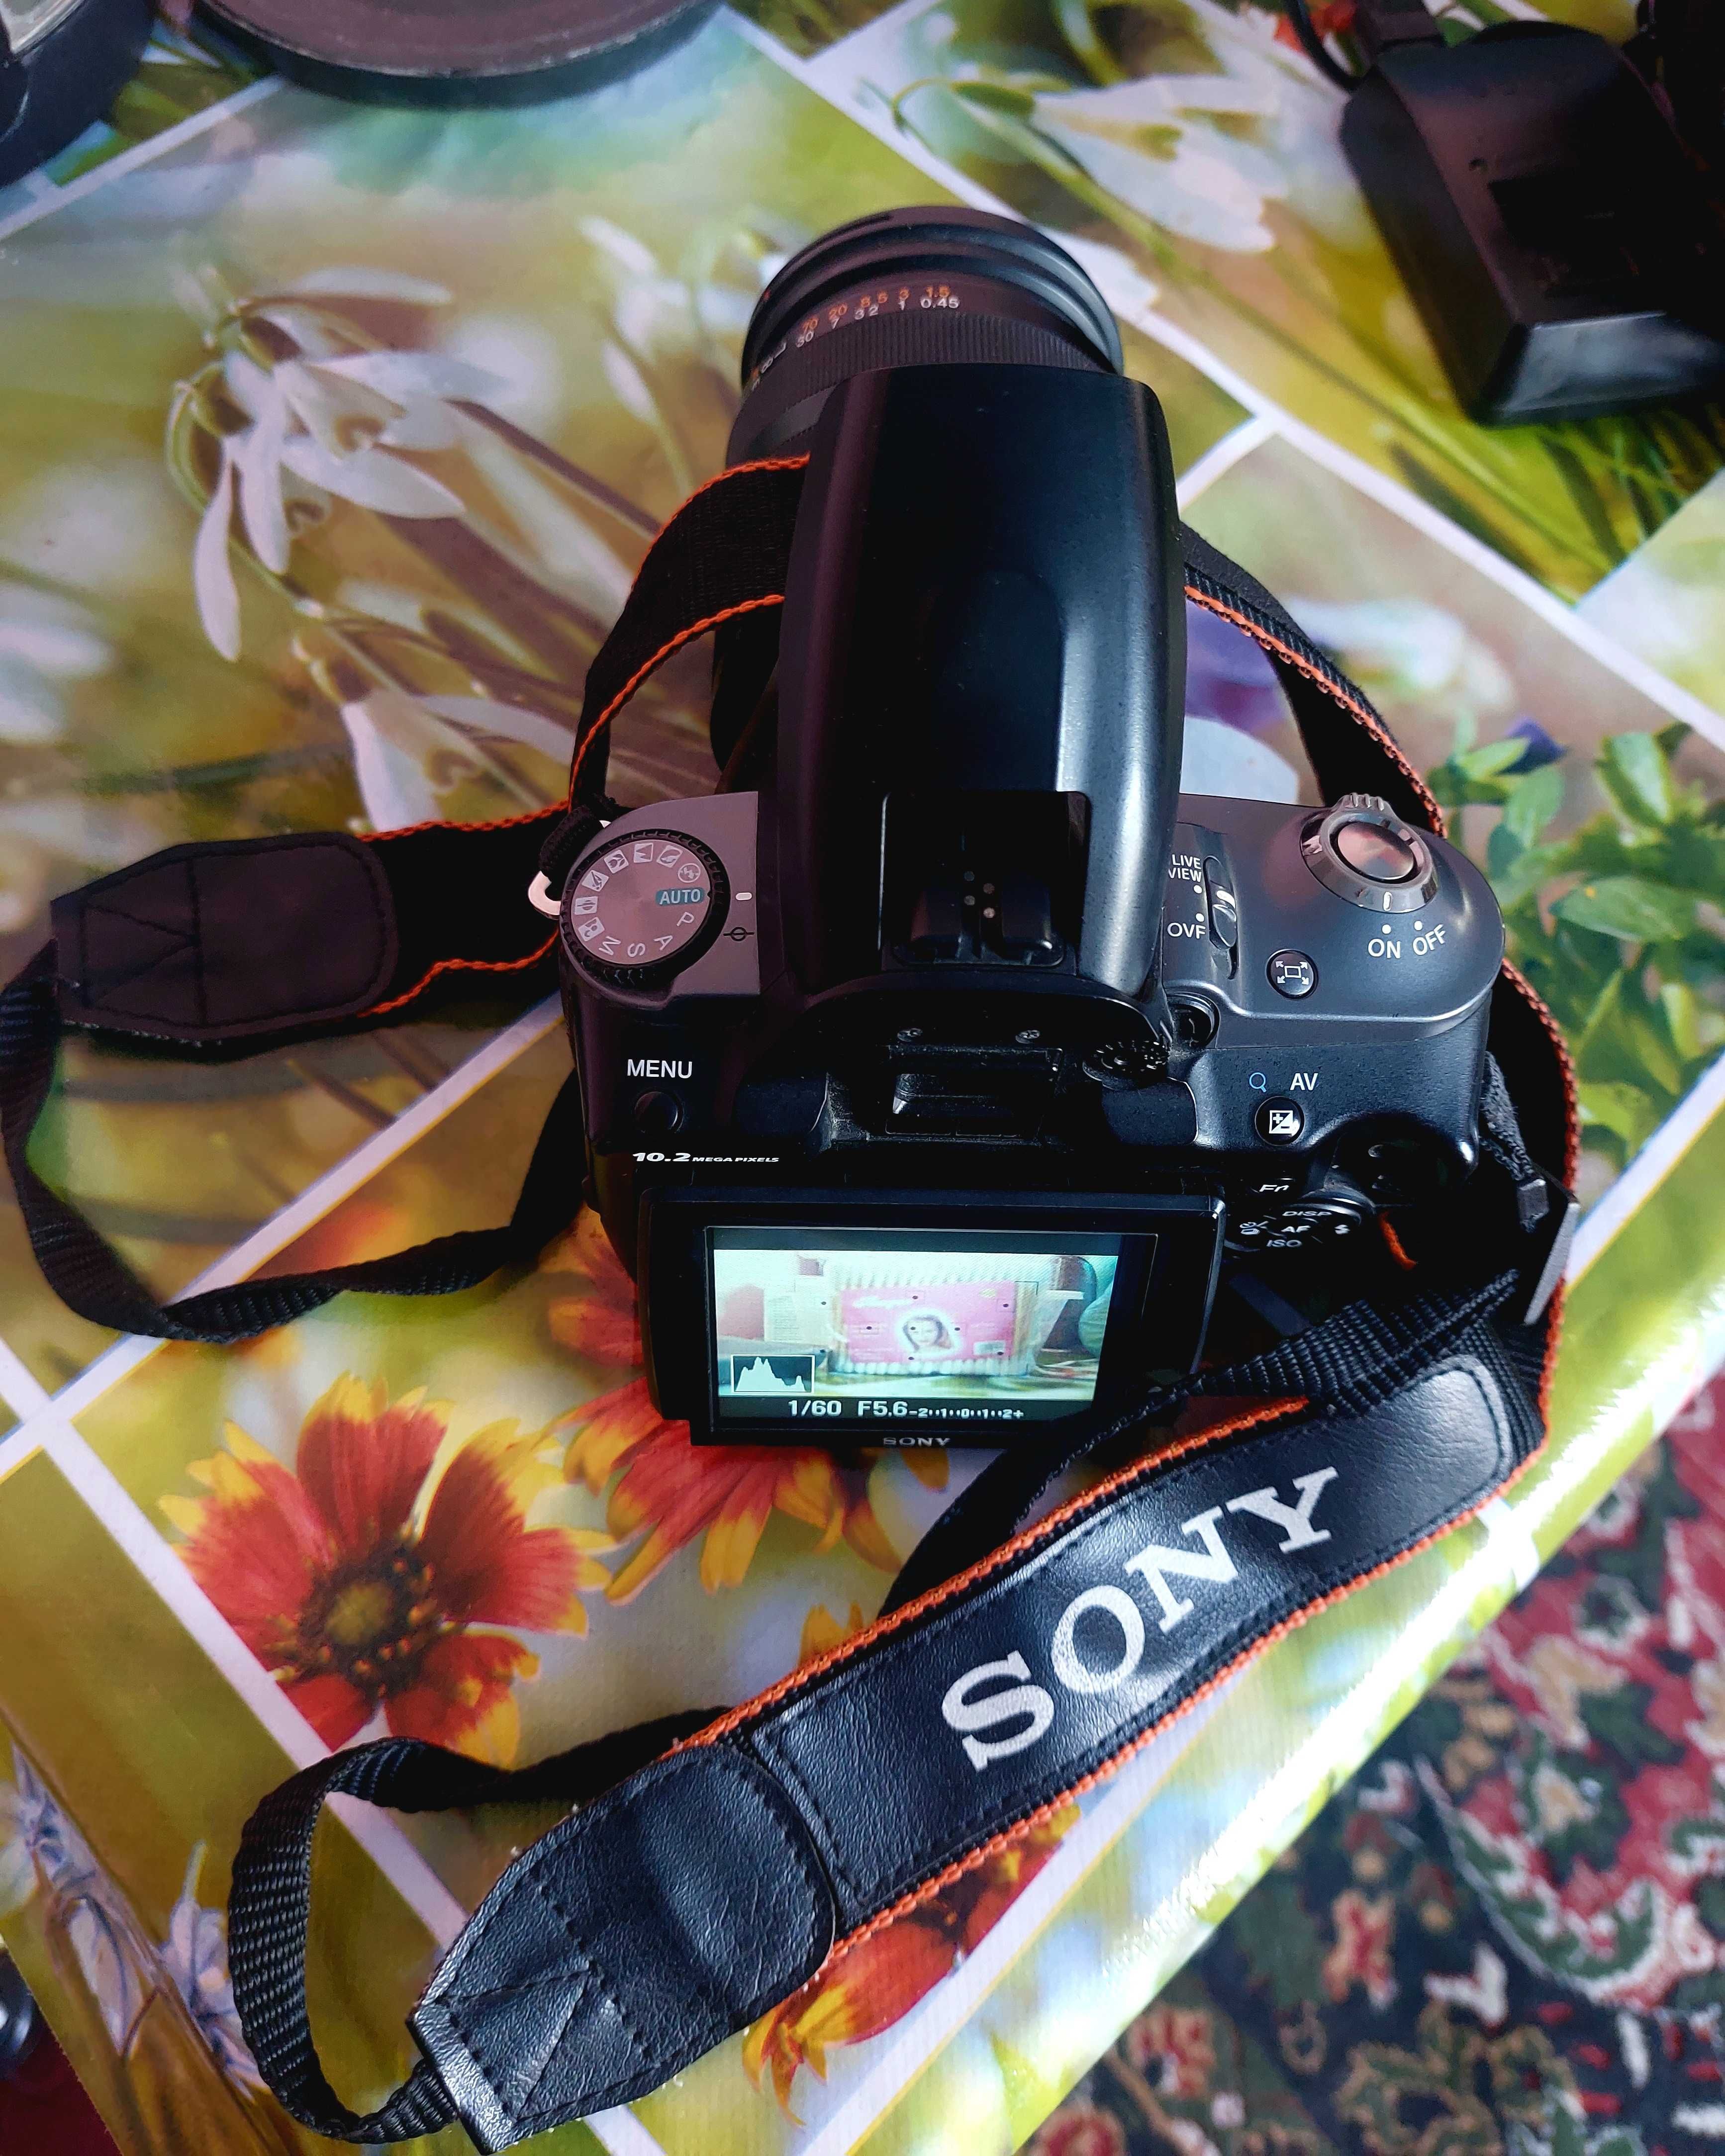 Sony alfa330 digital camera